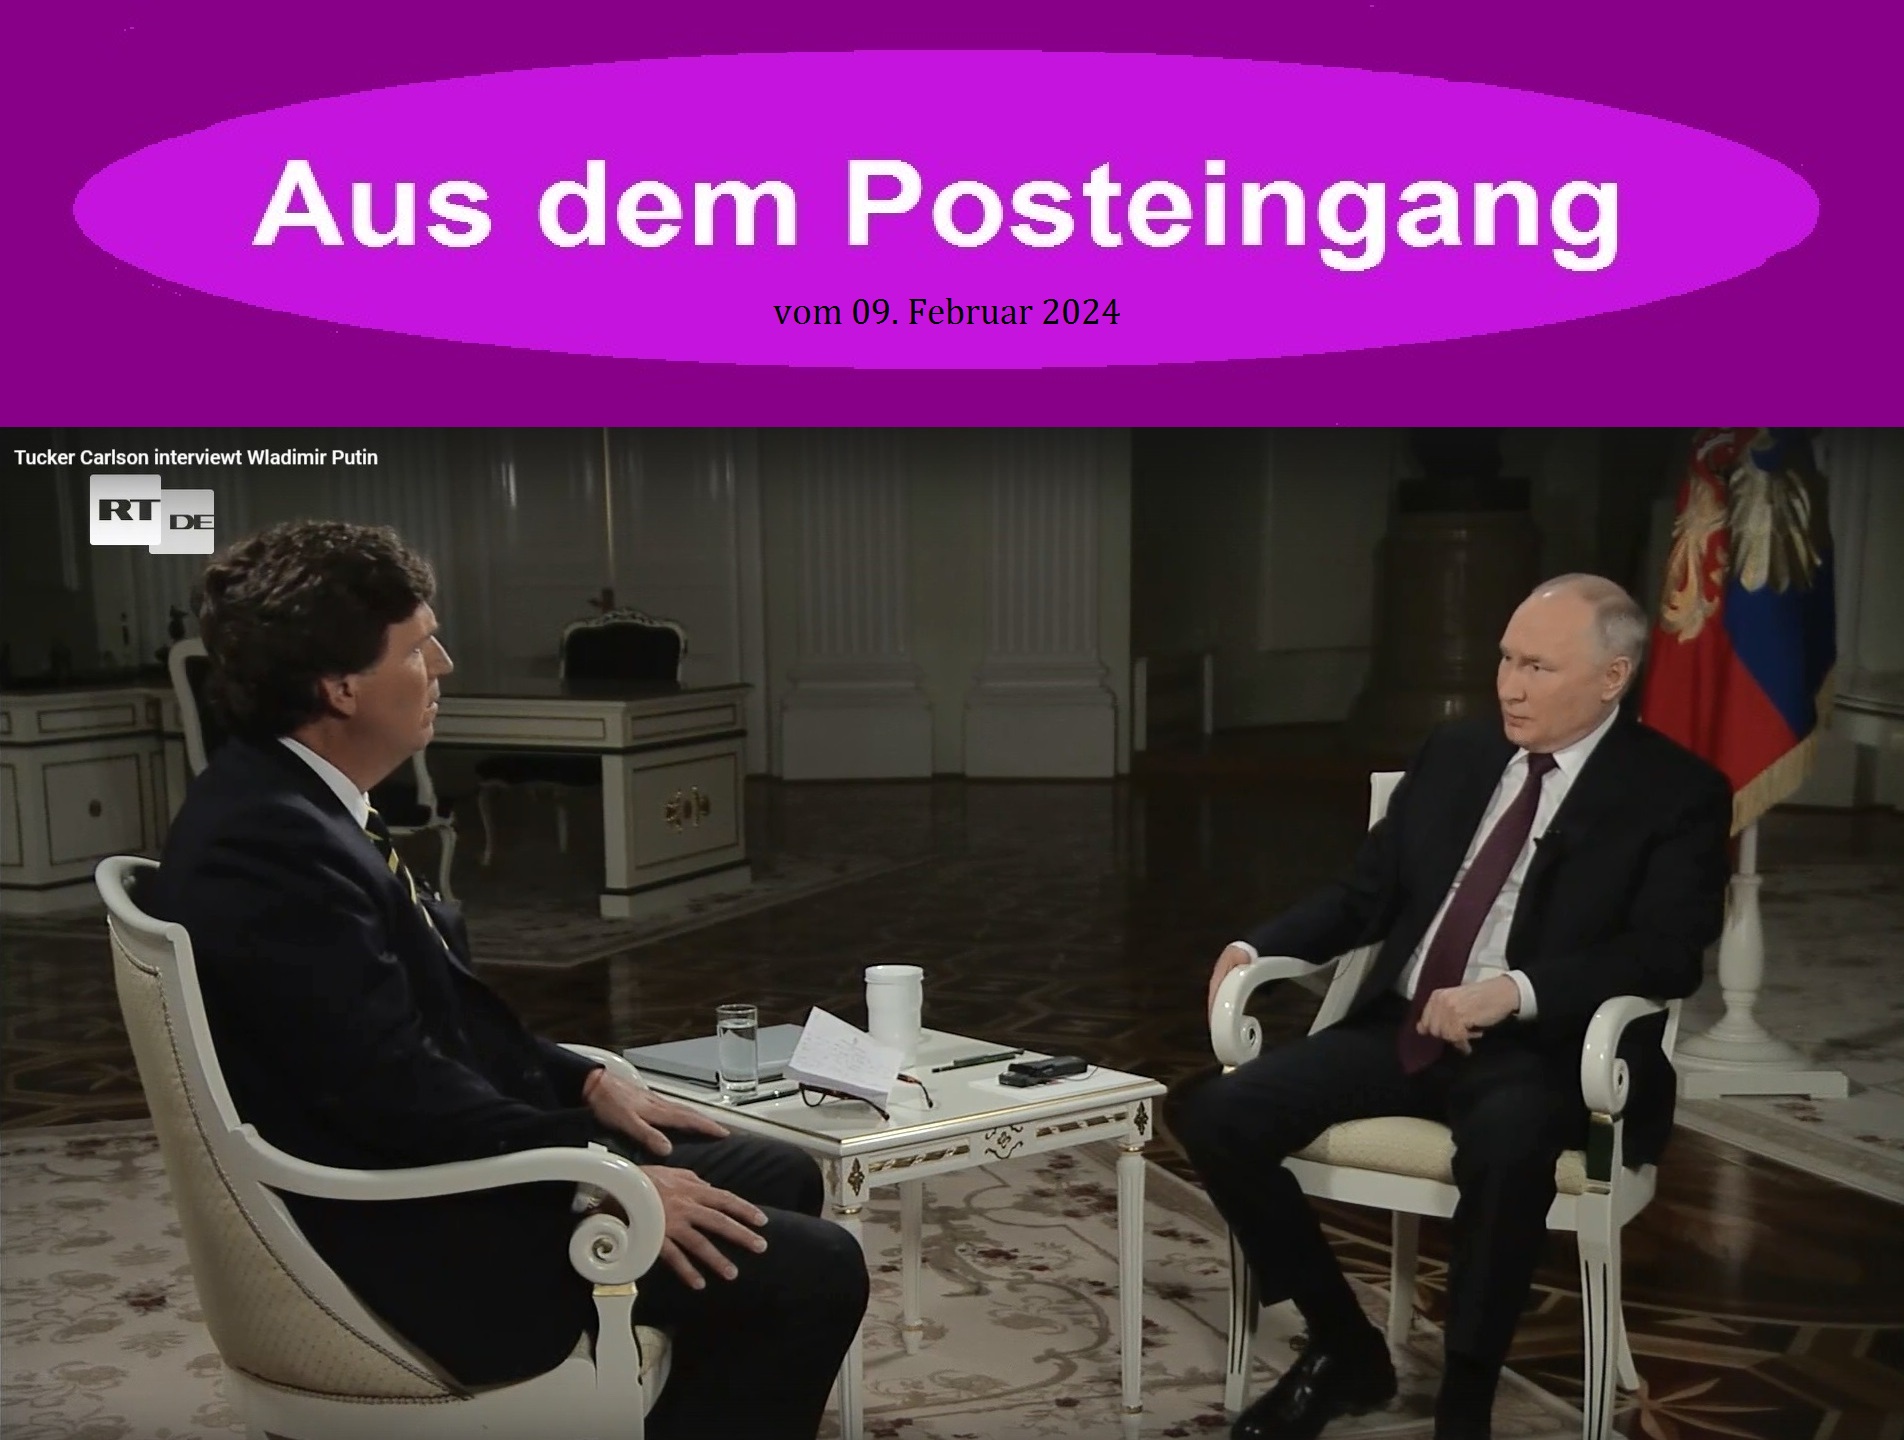 Tucker Carlson interviewt Wladimir Putin - Aus dem Posteingang vom 09.02.2024 - Link zum Video: https://vk.com/video-134310637_456274327 - oder Link: https://test.rtde.tech/international/video/195760-putin-interview-von-tucker-carlson/